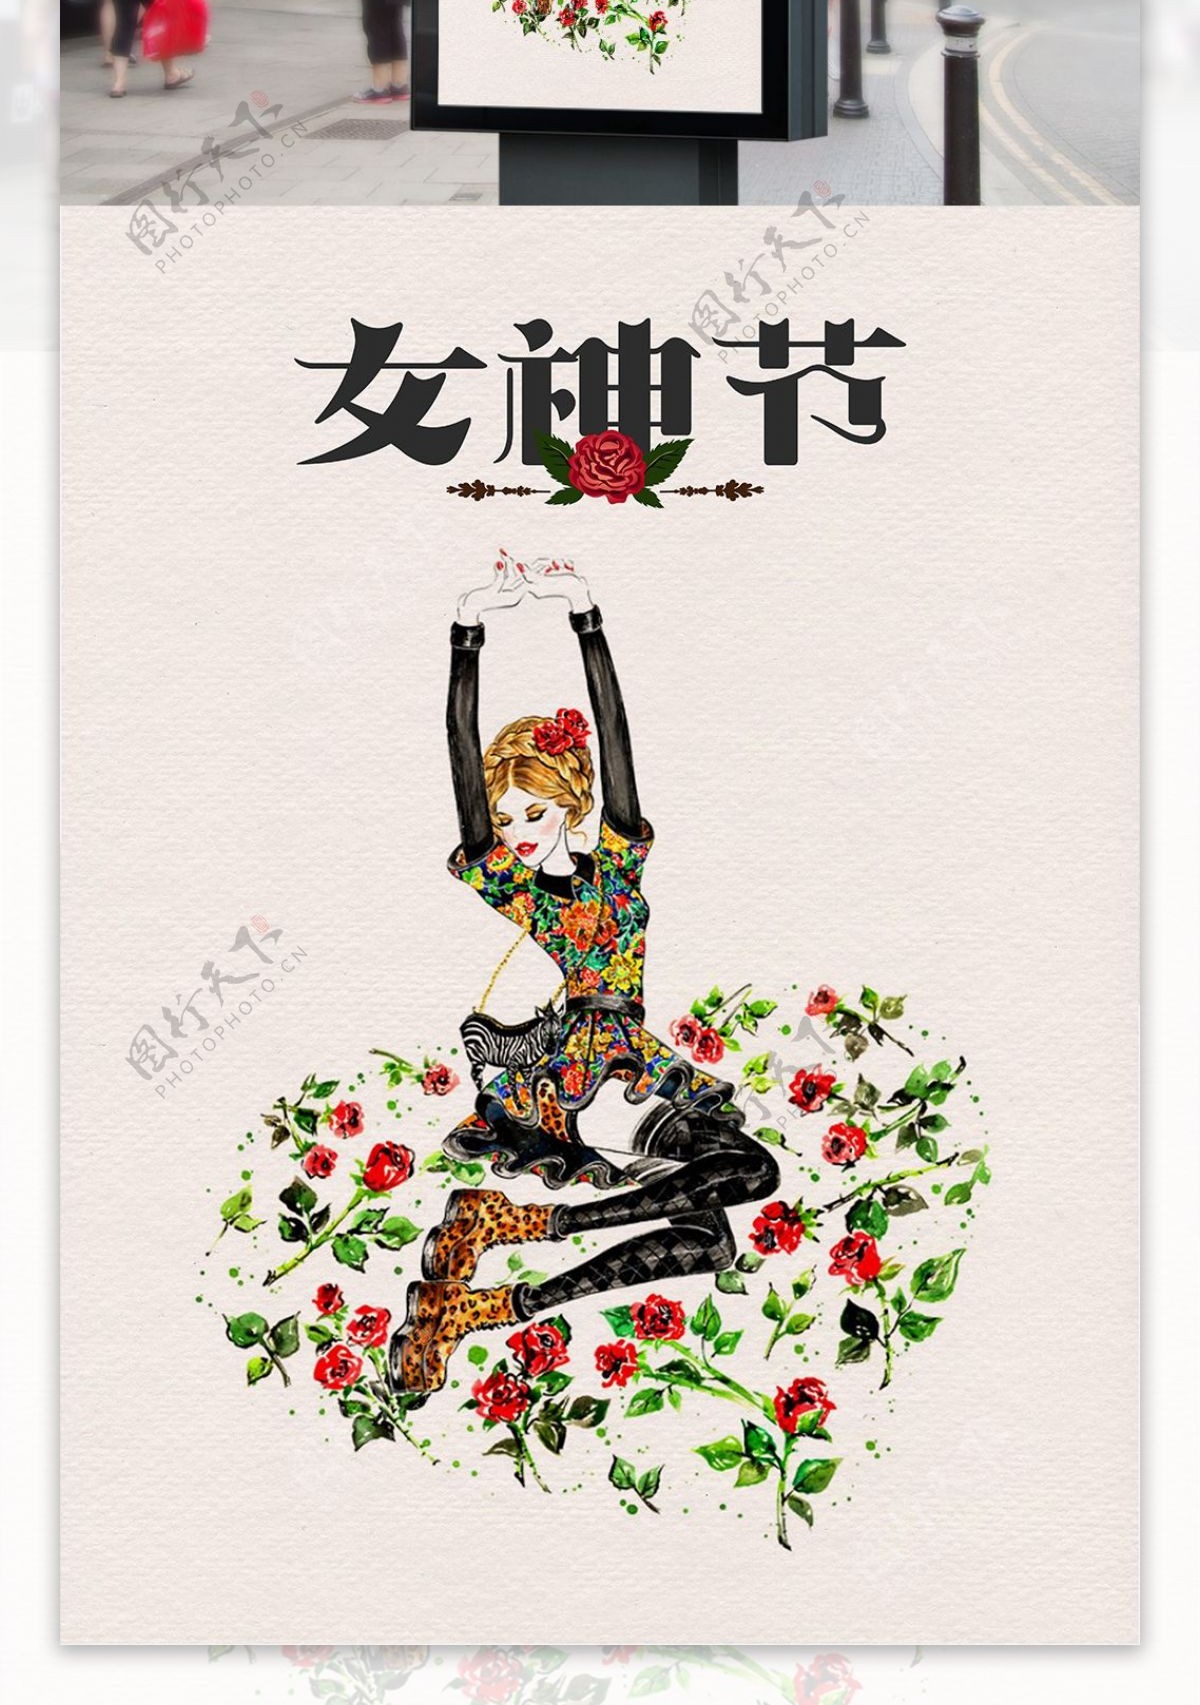 手绘女神节宣传海报